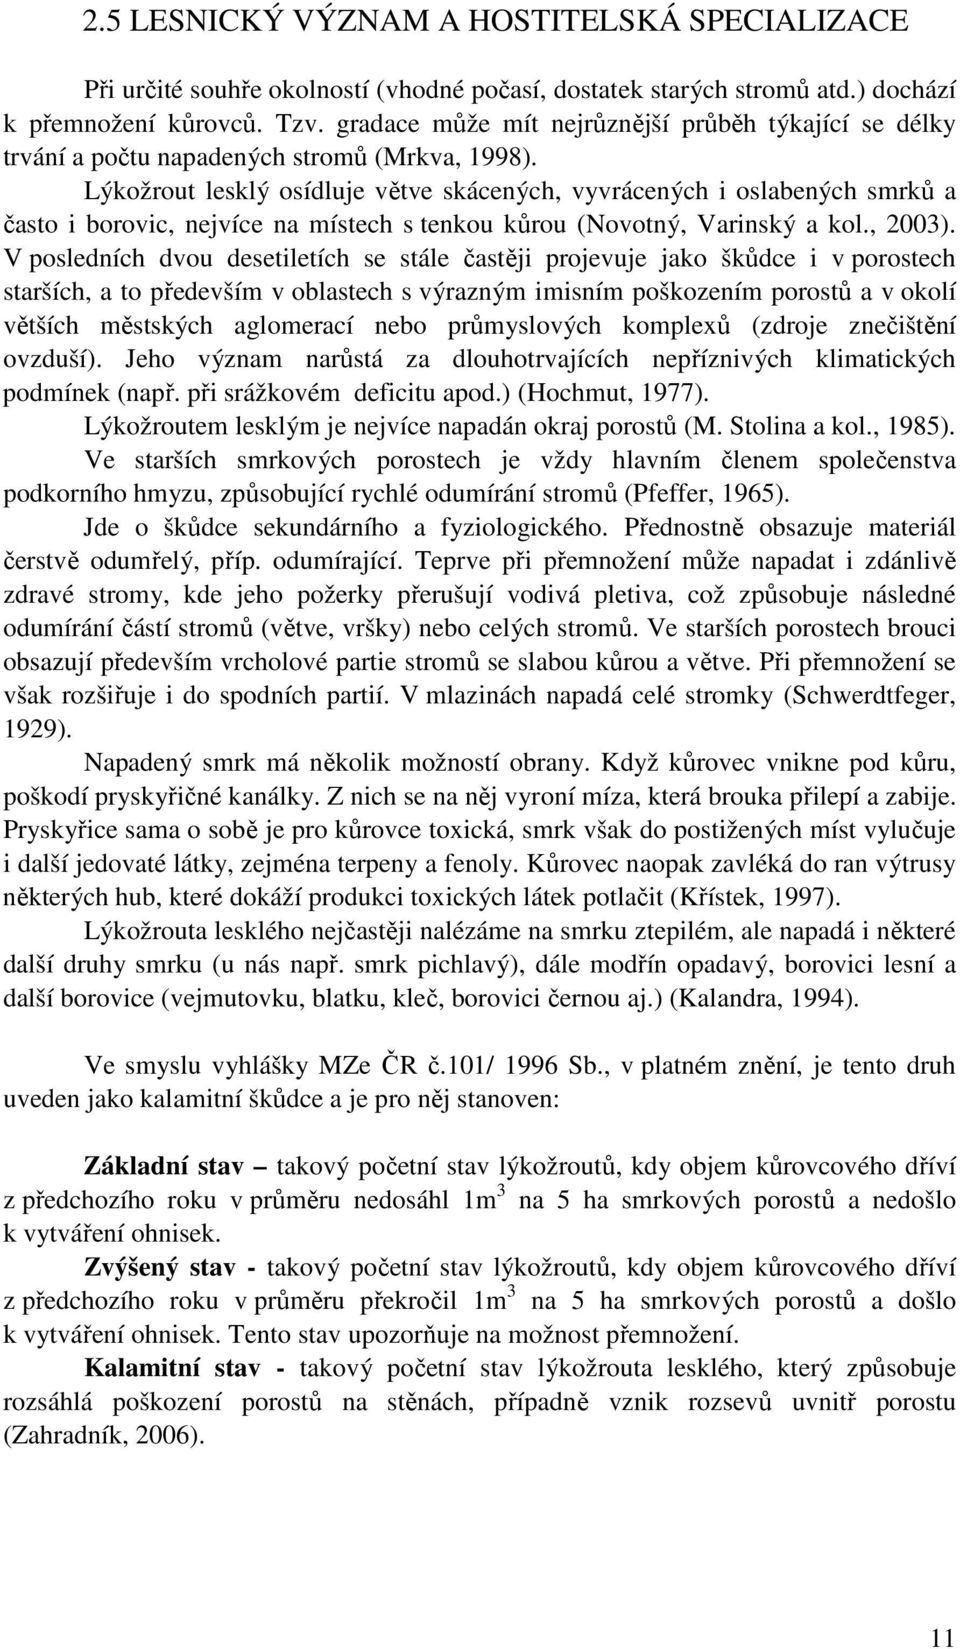 Lýkožrout lesklý osídluje větve skácených, vyvrácených i oslabených smrků a často i borovic, nejvíce na místech s tenkou kůrou (Novotný, Varinský a kol., 2003).